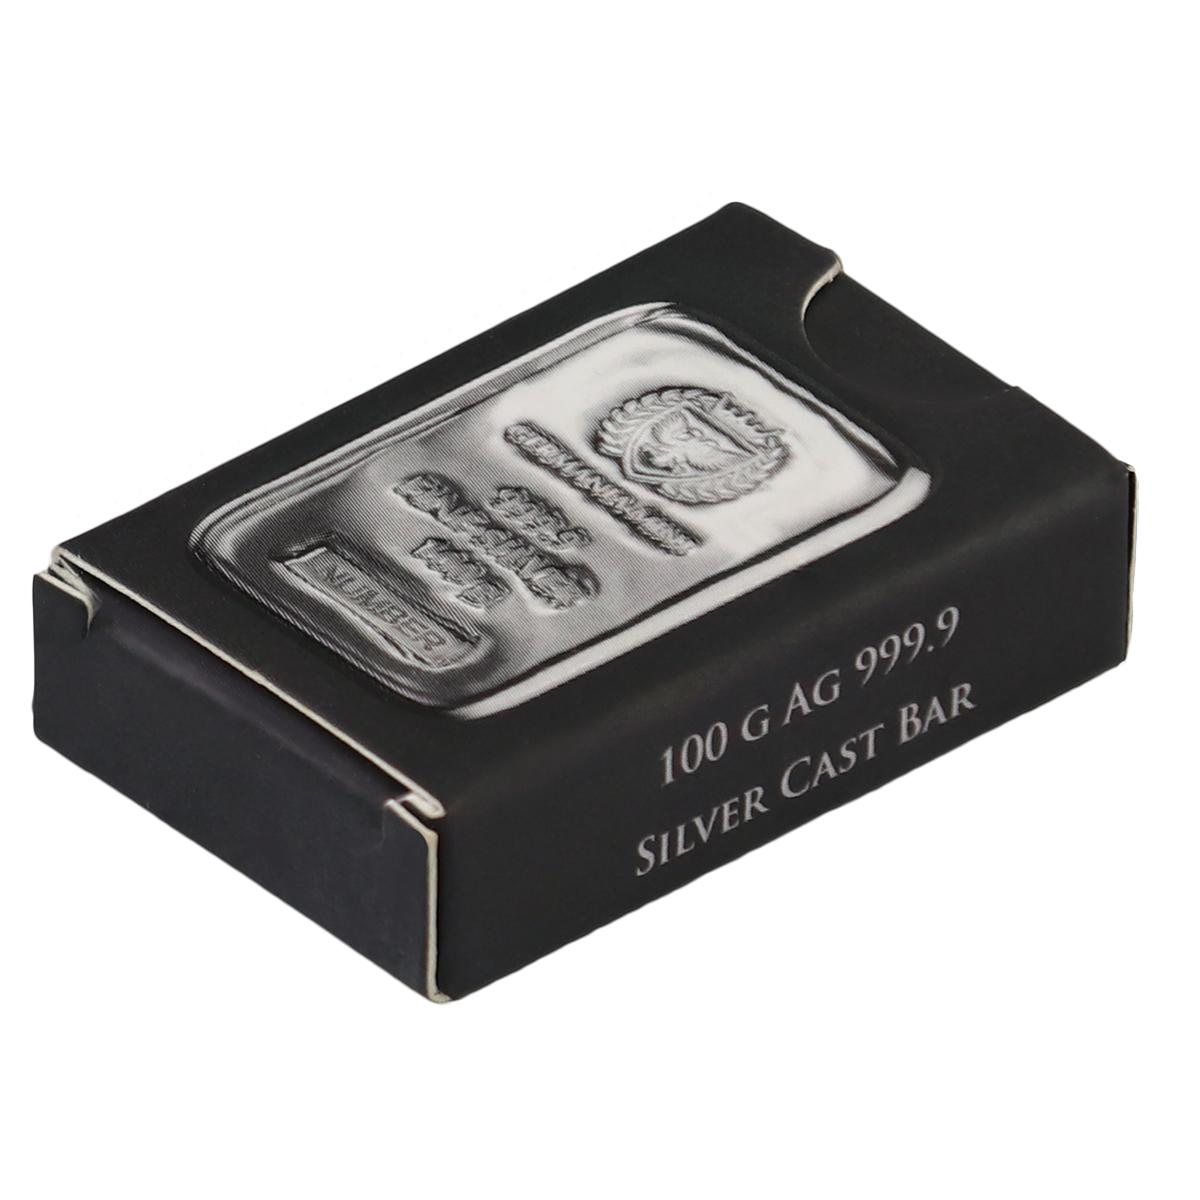 Germania Mint 100 g Silver Bar